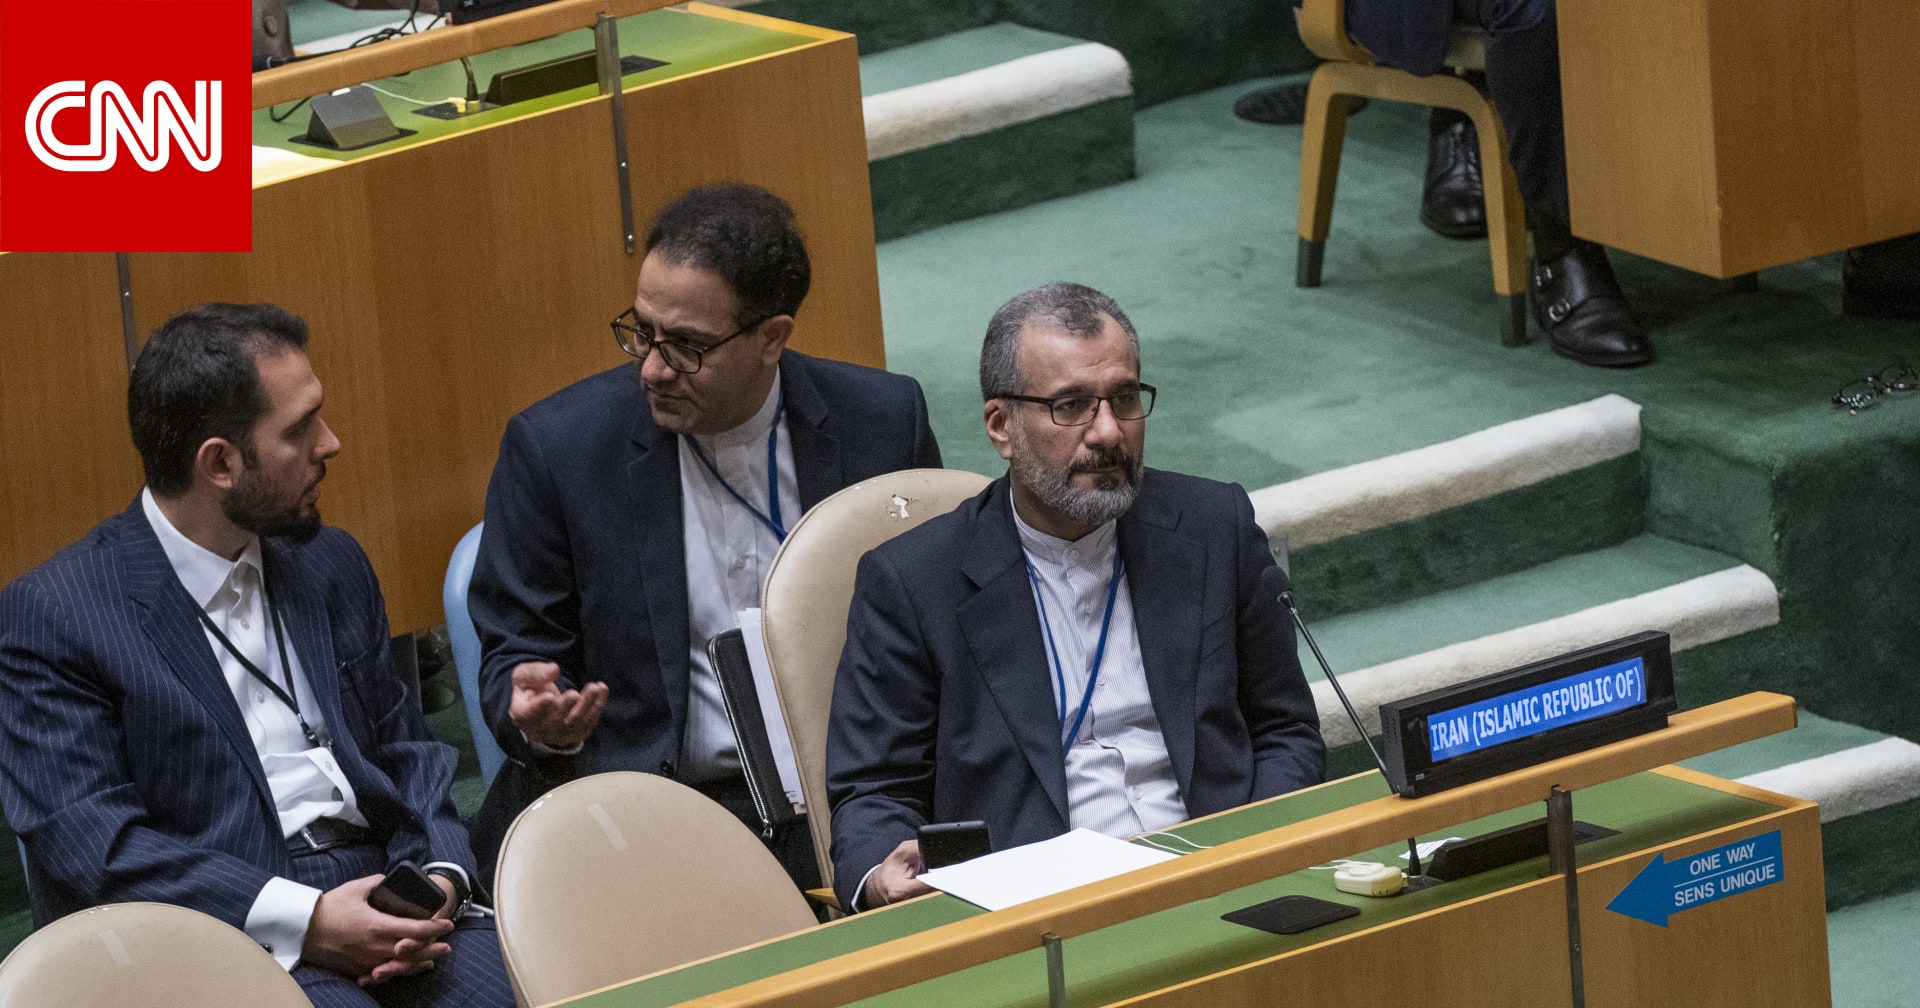 إيران توضح سبب تصويتها لصالح القرار بشأن غزة في الأمم المتحدة رغم اعتراضها على أجزاء منه